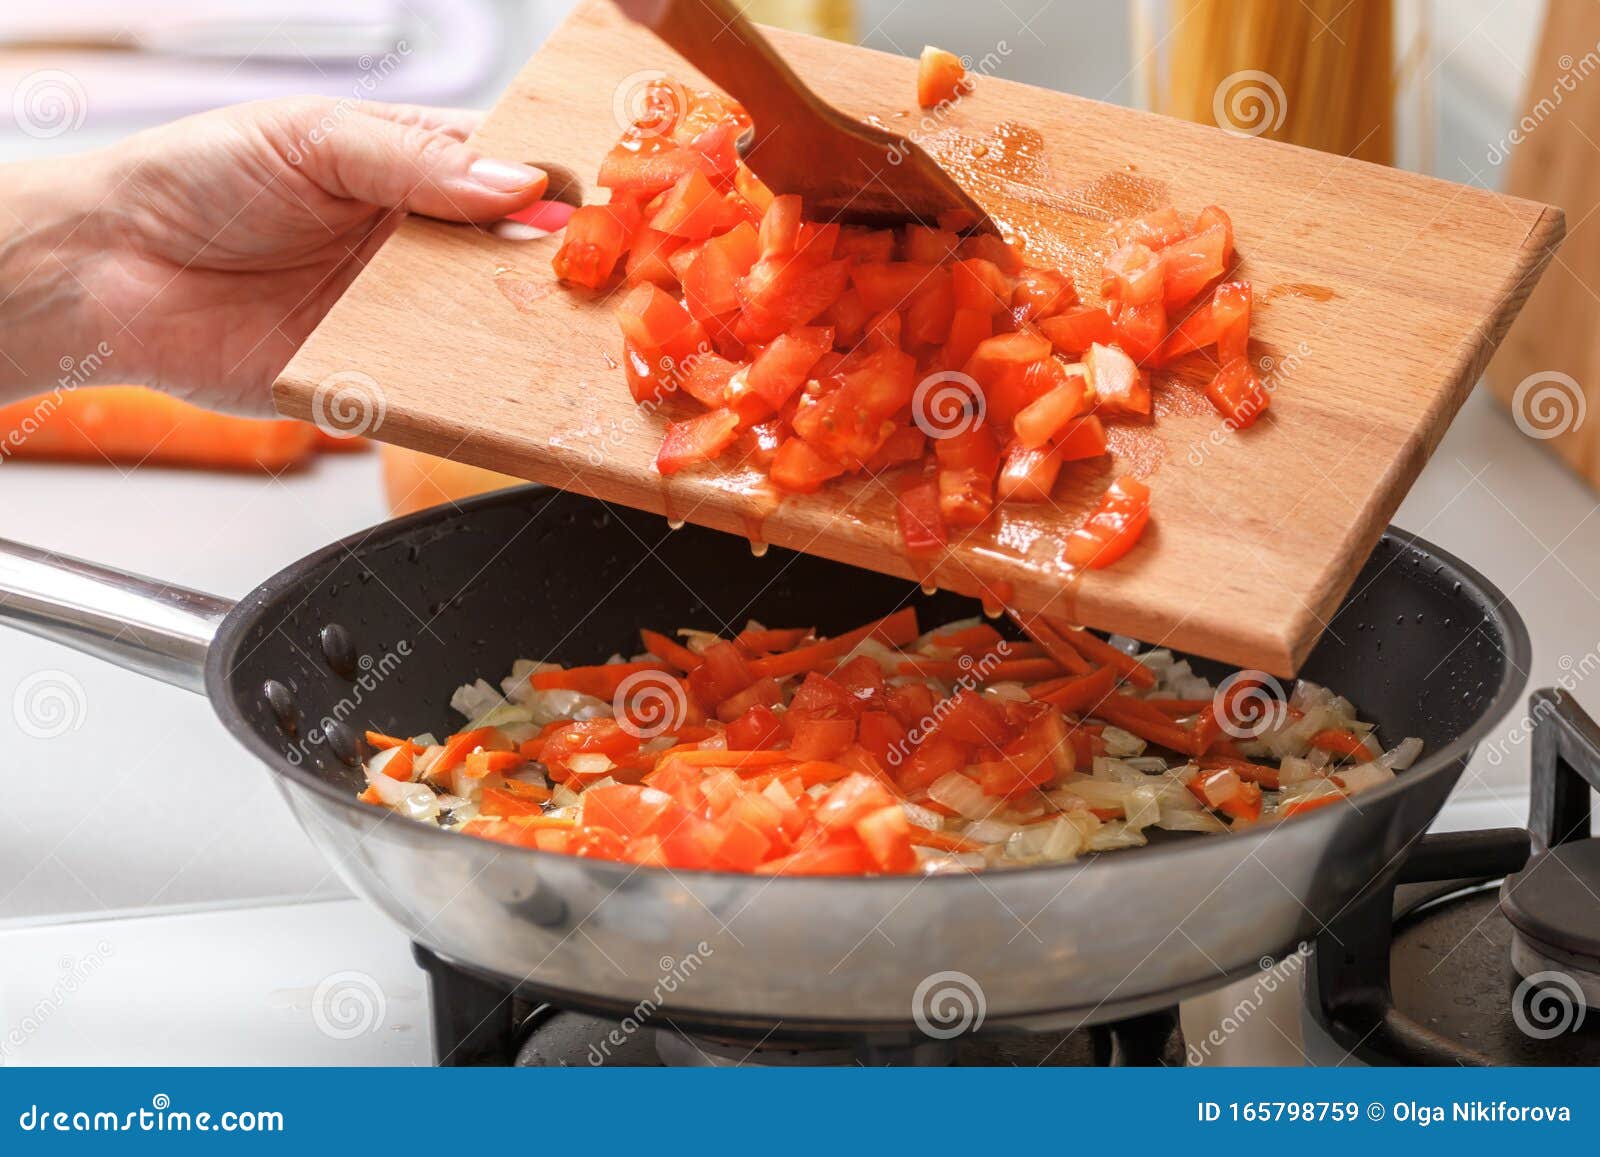 can you put hot pan cutting board